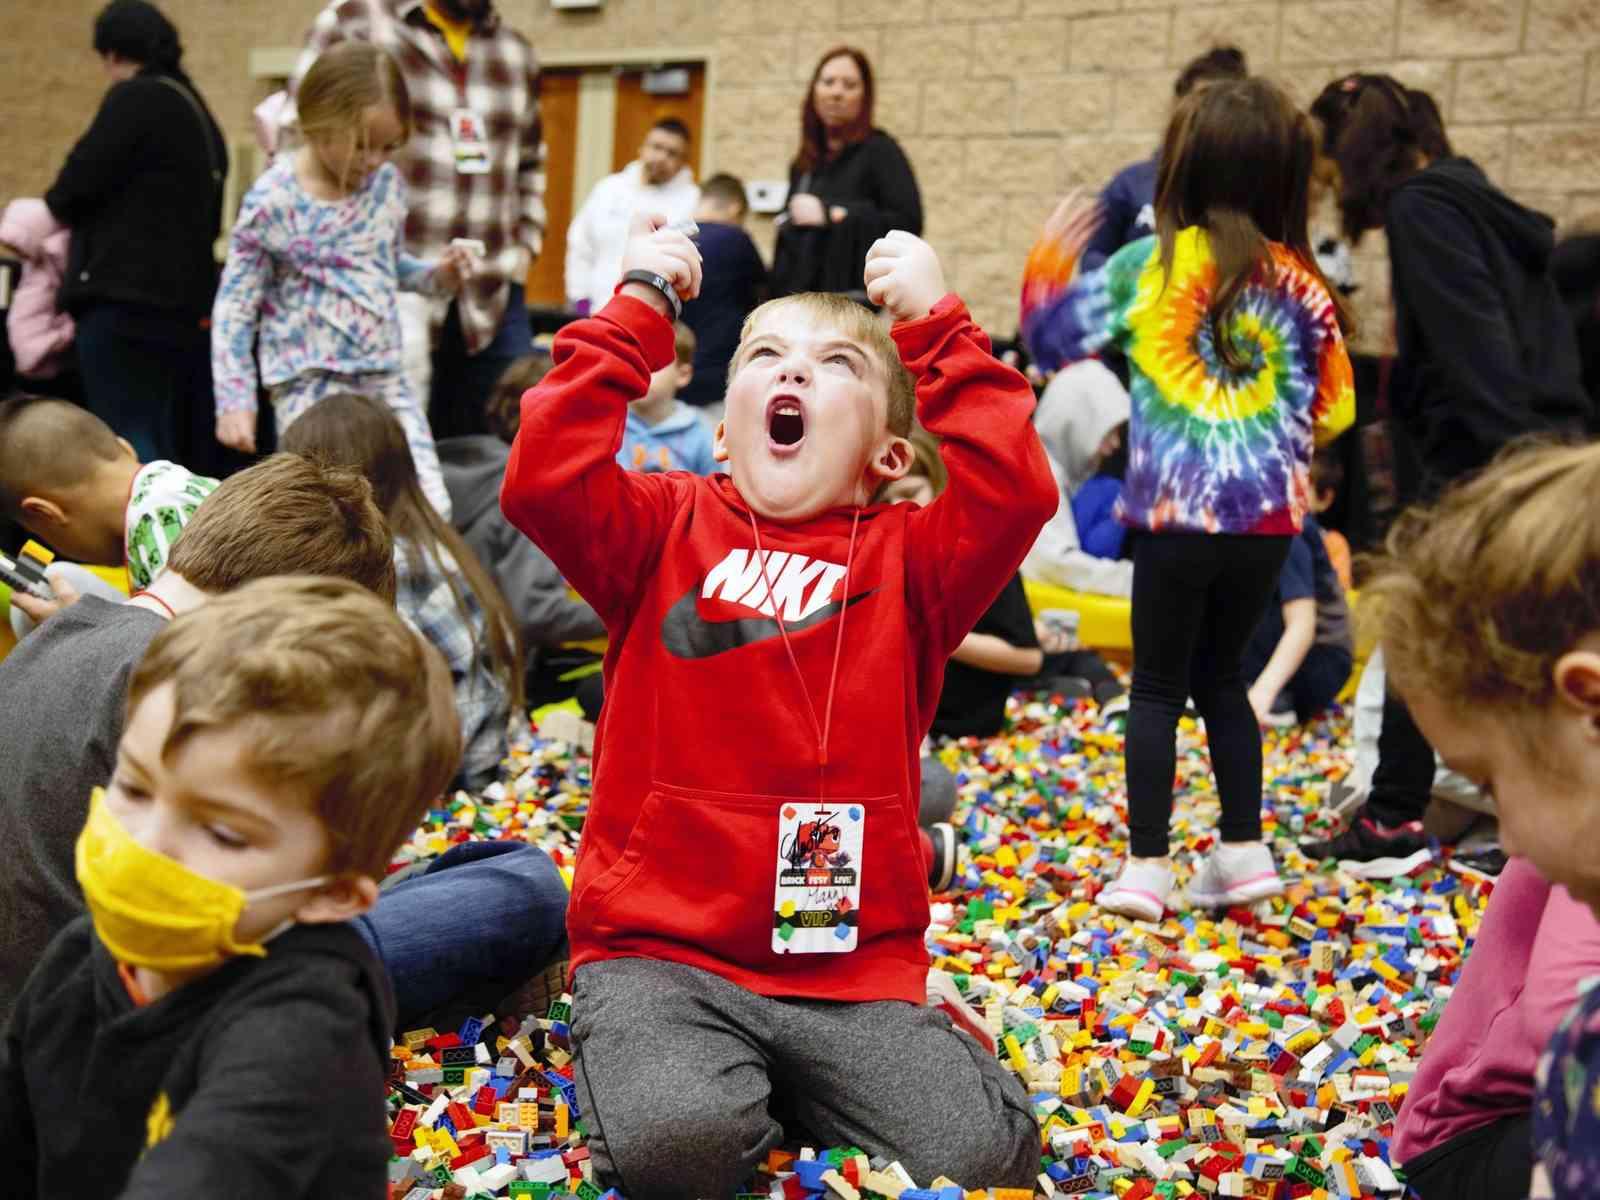 Kind freut sich, umgeben von Legosteinen